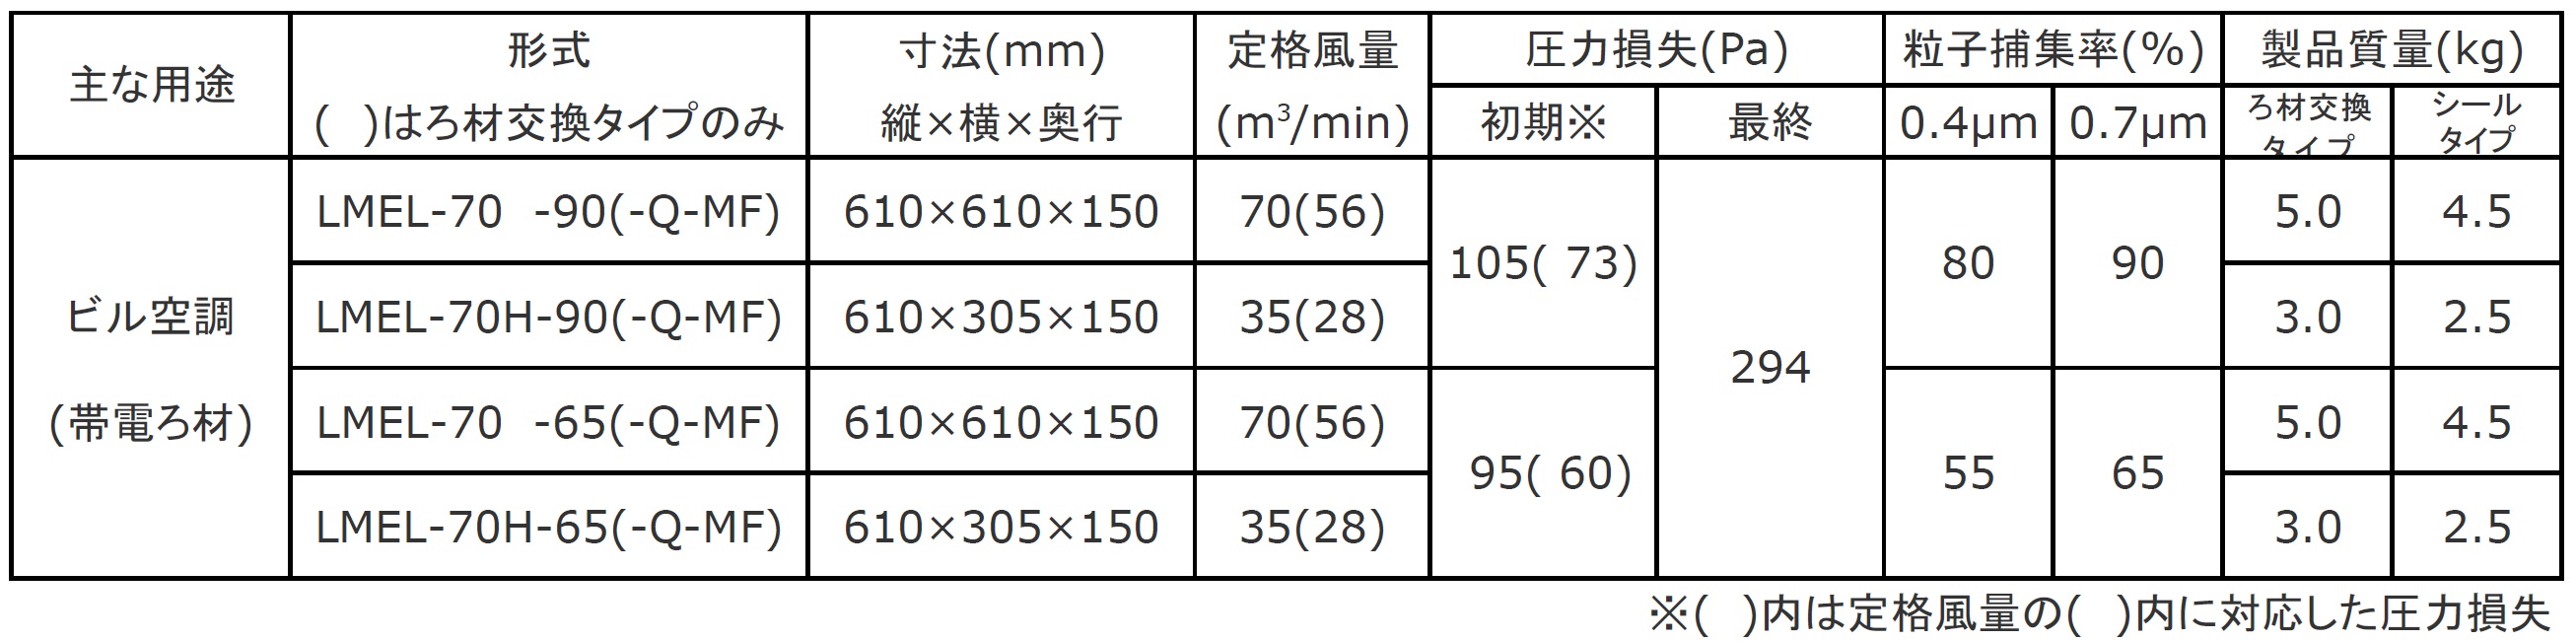 日本無機 塩害対策低圧力損失中性能フィルタ レルフィ 610X610X150 LMXL-70-65S 期間限定 ポイント10倍 - 6